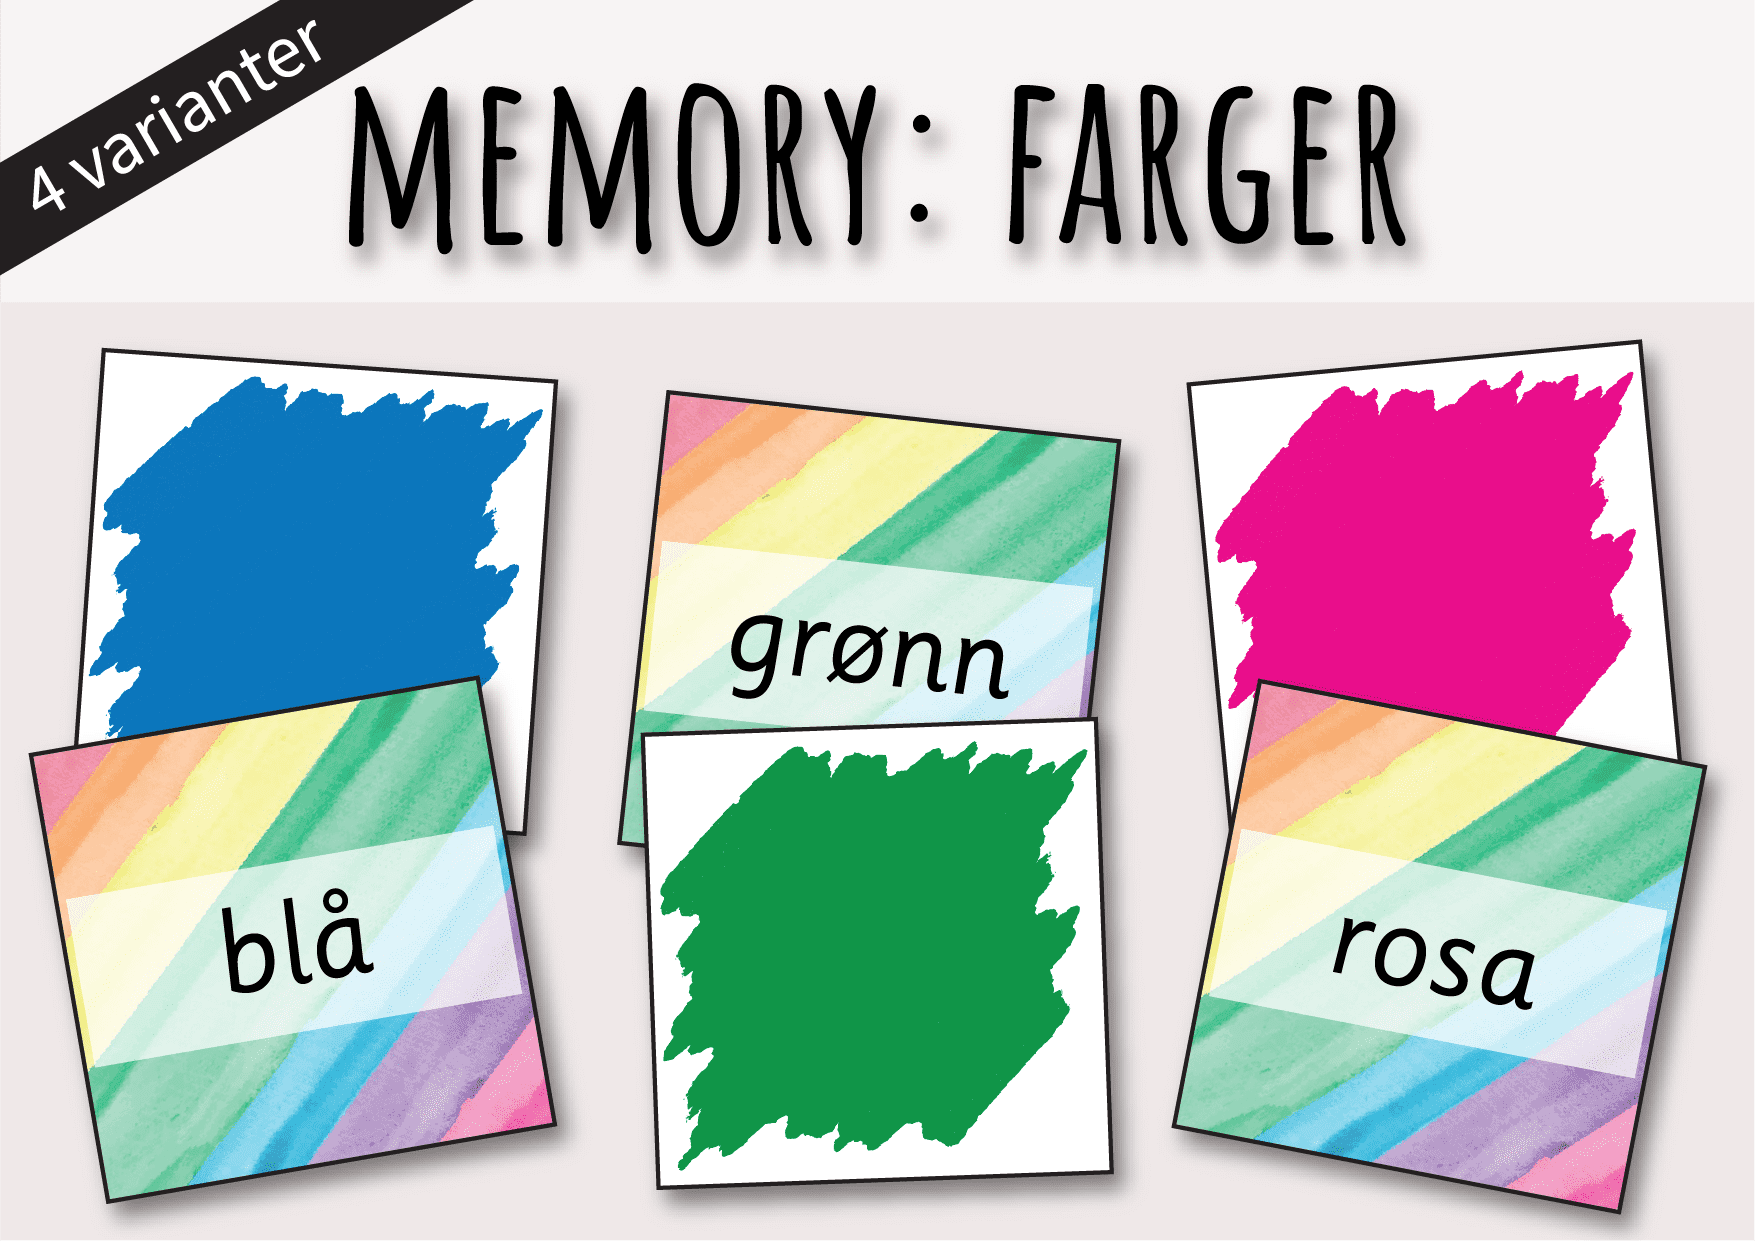 Memory: farger